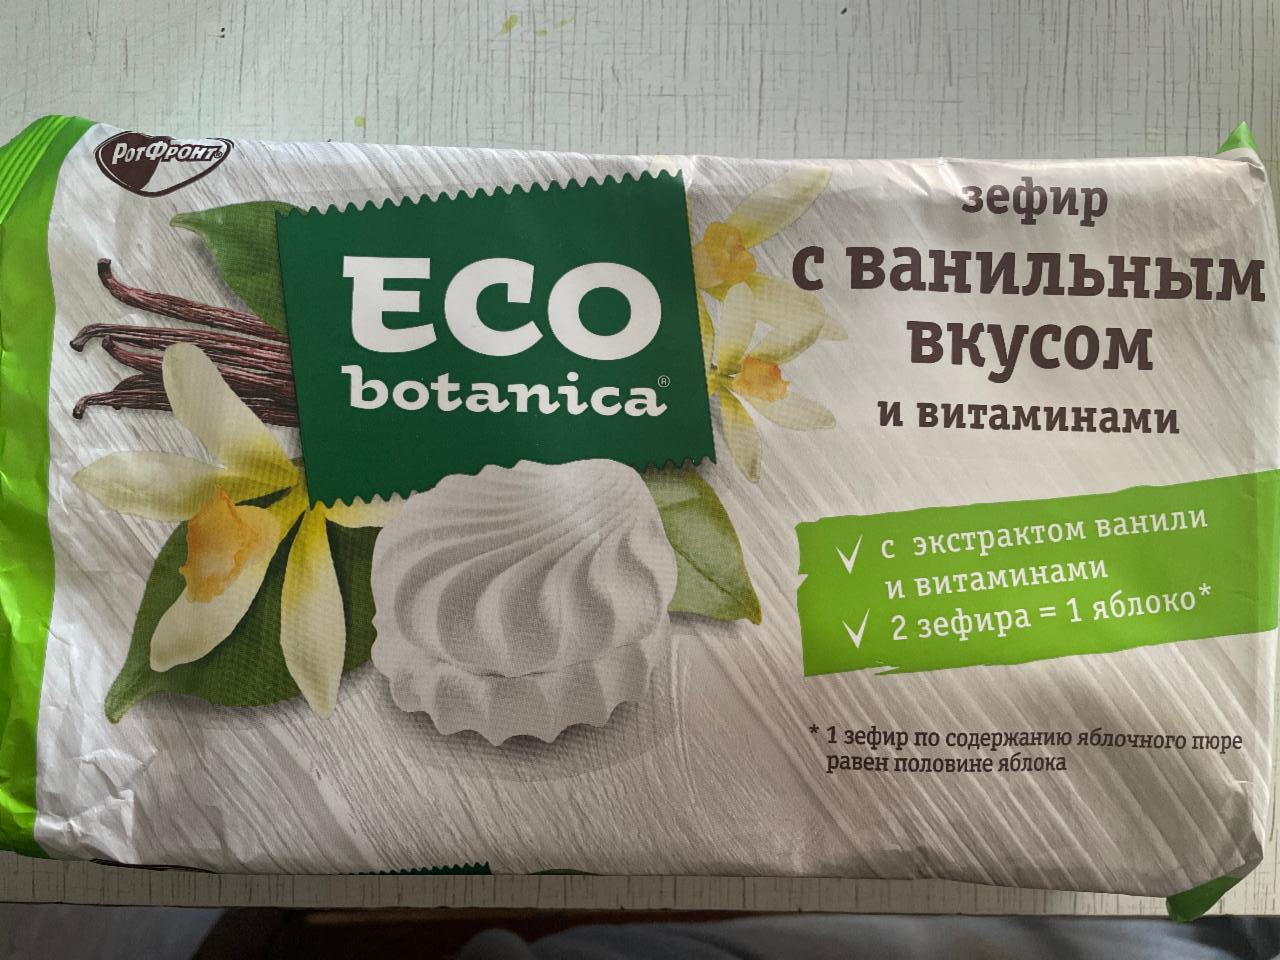 Фото - Зефир с ванильным вкусом 2 зефира=1 яблоко Eco botanica